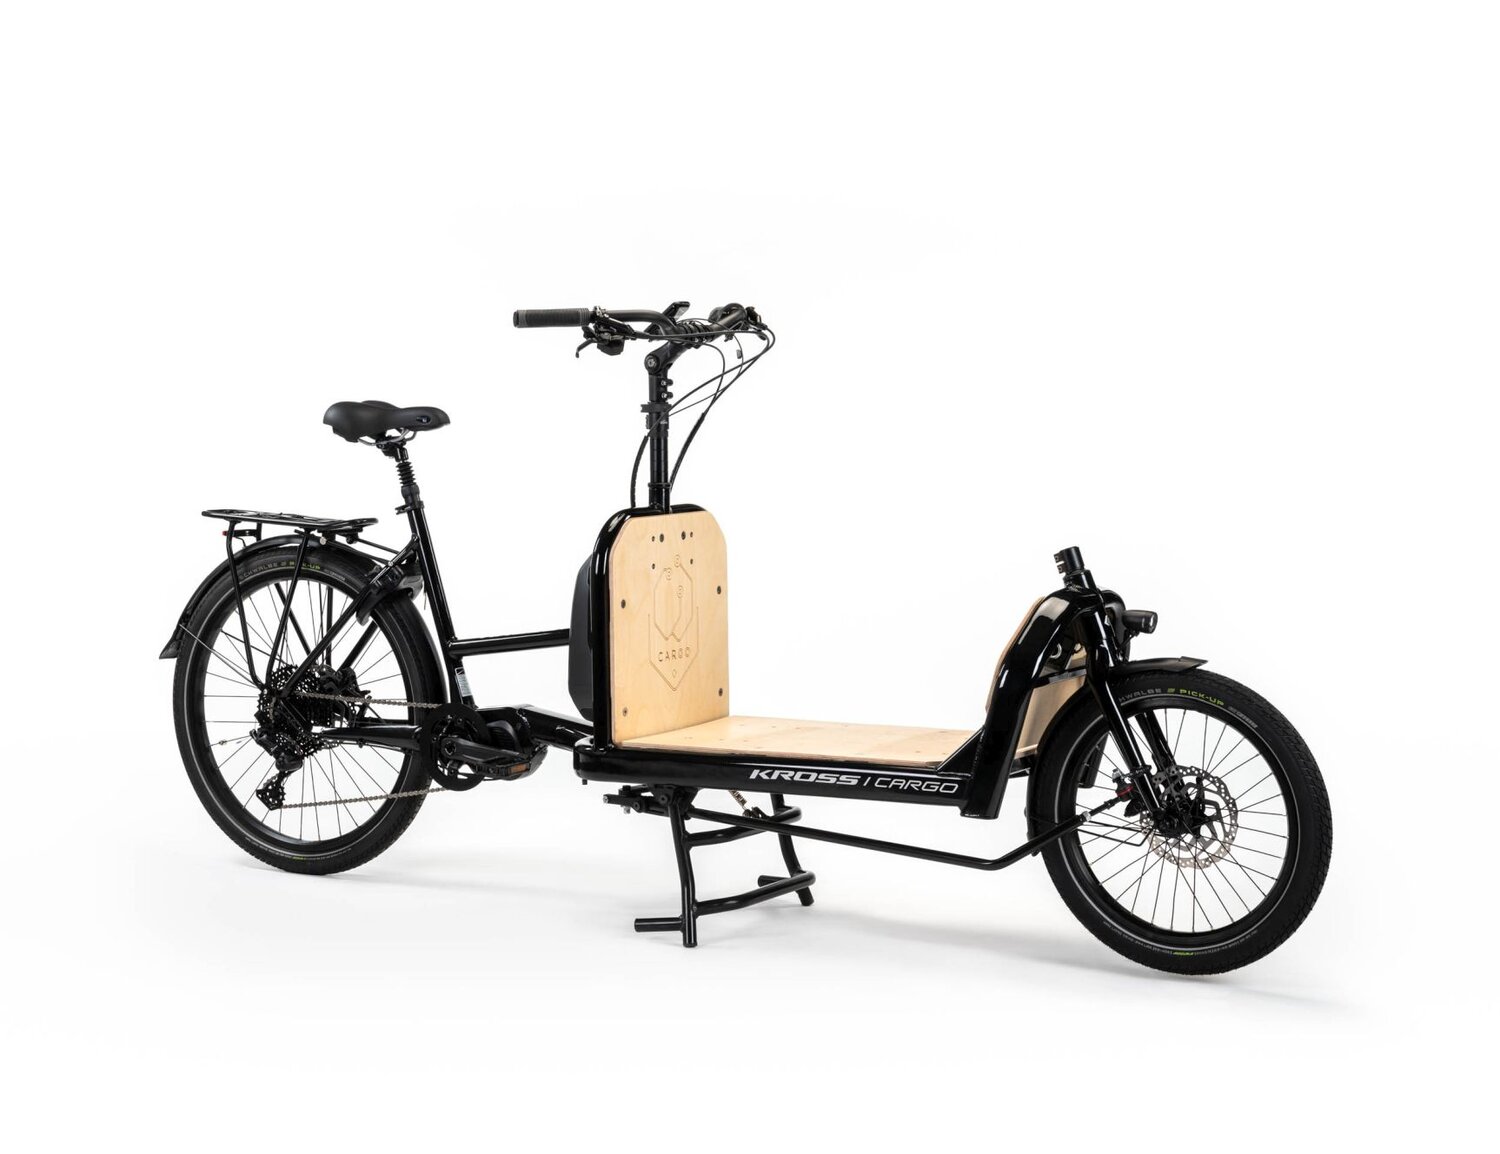  Elektryczny rower cargo Ebike KROSS E-Cargo 1.0 Platform na aluminiowej ramie w kolorze czarnym wyposażony w osprzęt Microshift i Shimano oraz elektryczny napęd Shimano 